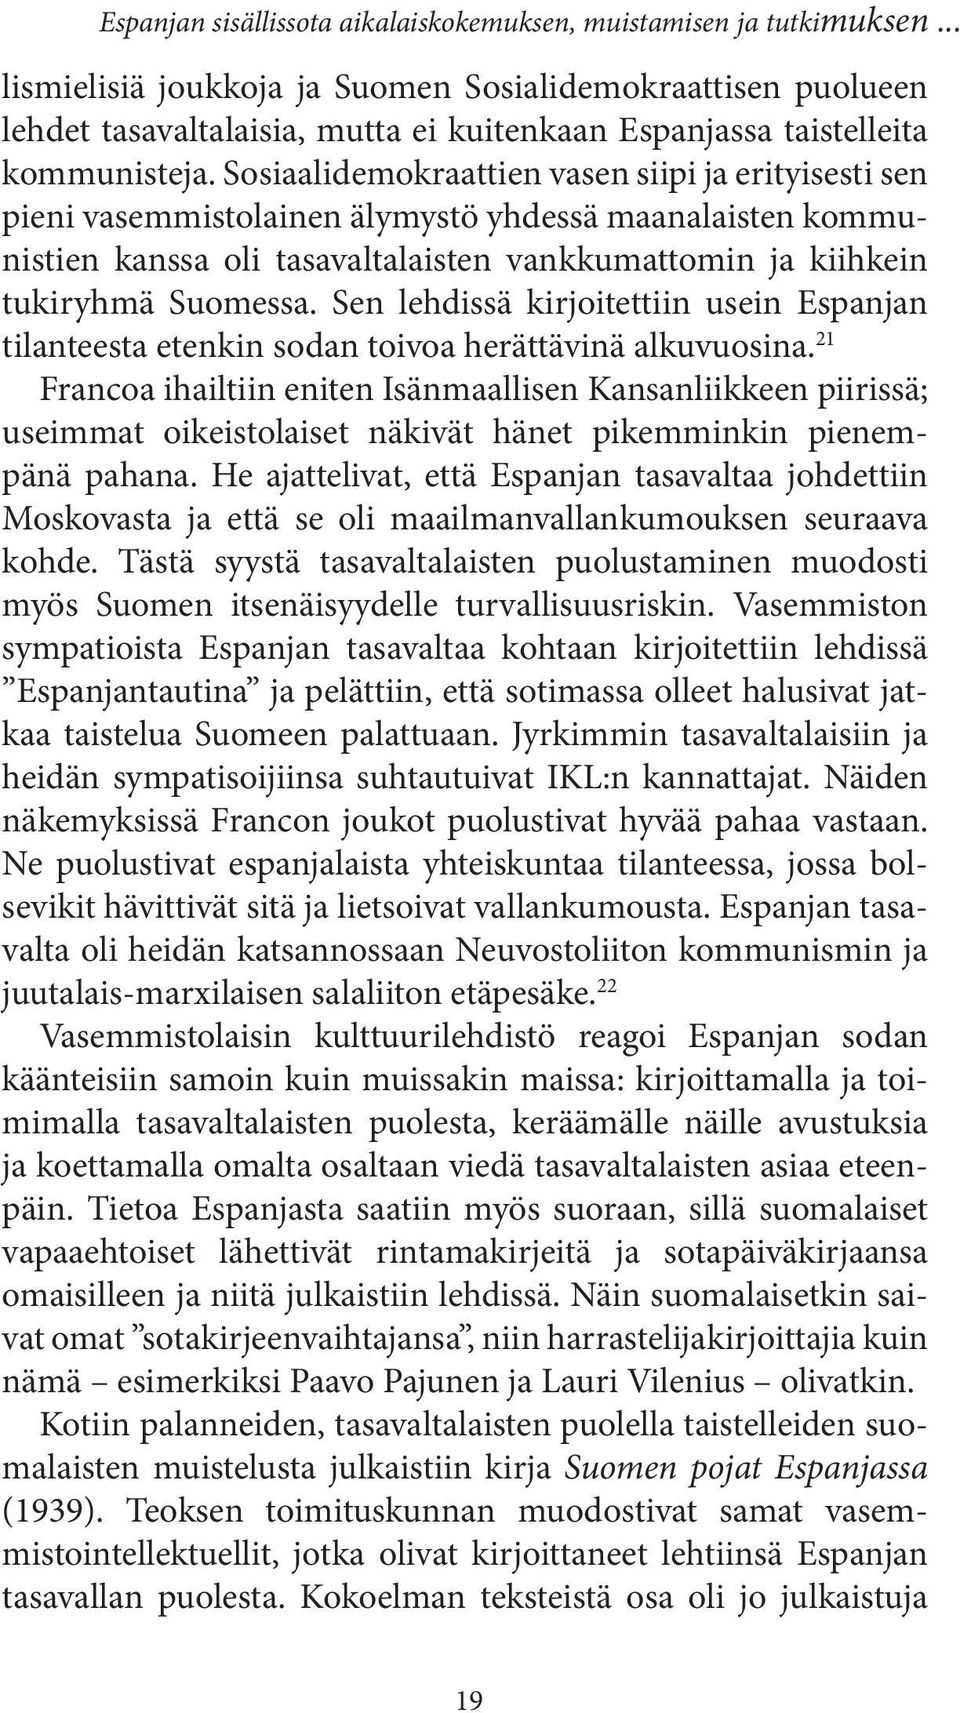 Sosiaalidemokraattien vasen siipi ja erityisesti sen pieni vasemmistolainen älymystö yhdessä maanalaisten kommunistien kanssa oli tasavaltalaisten vankkumattomin ja kiihkein tukiryhmä Suomessa.